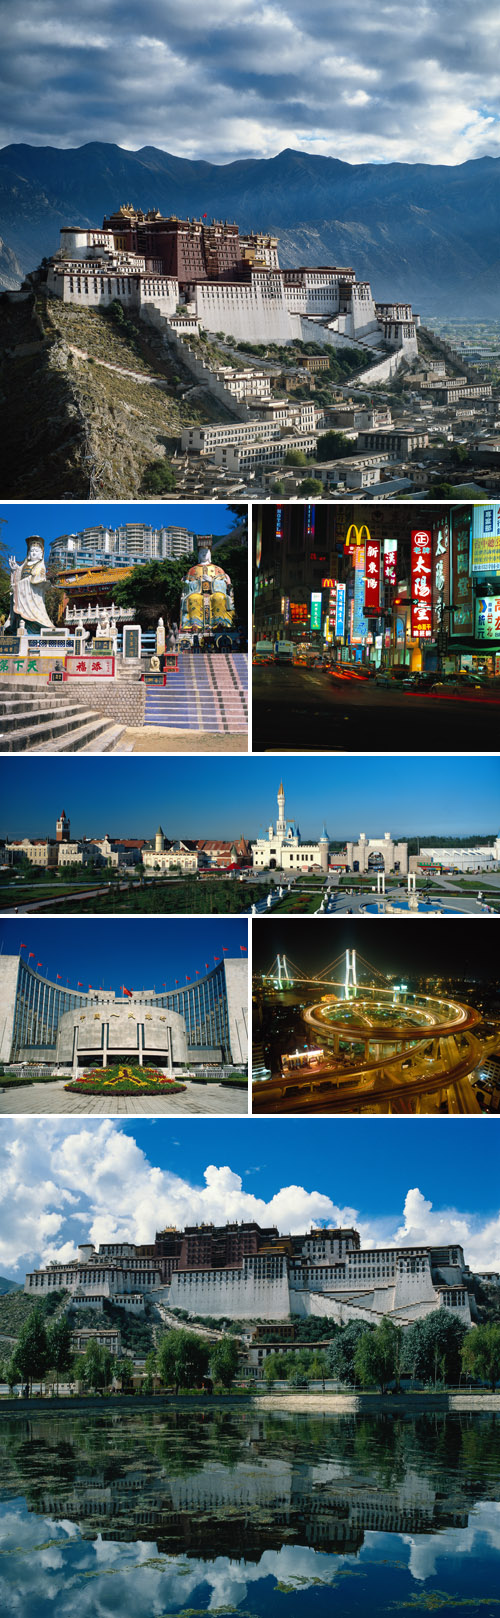 China Stock Photos - City Scenery